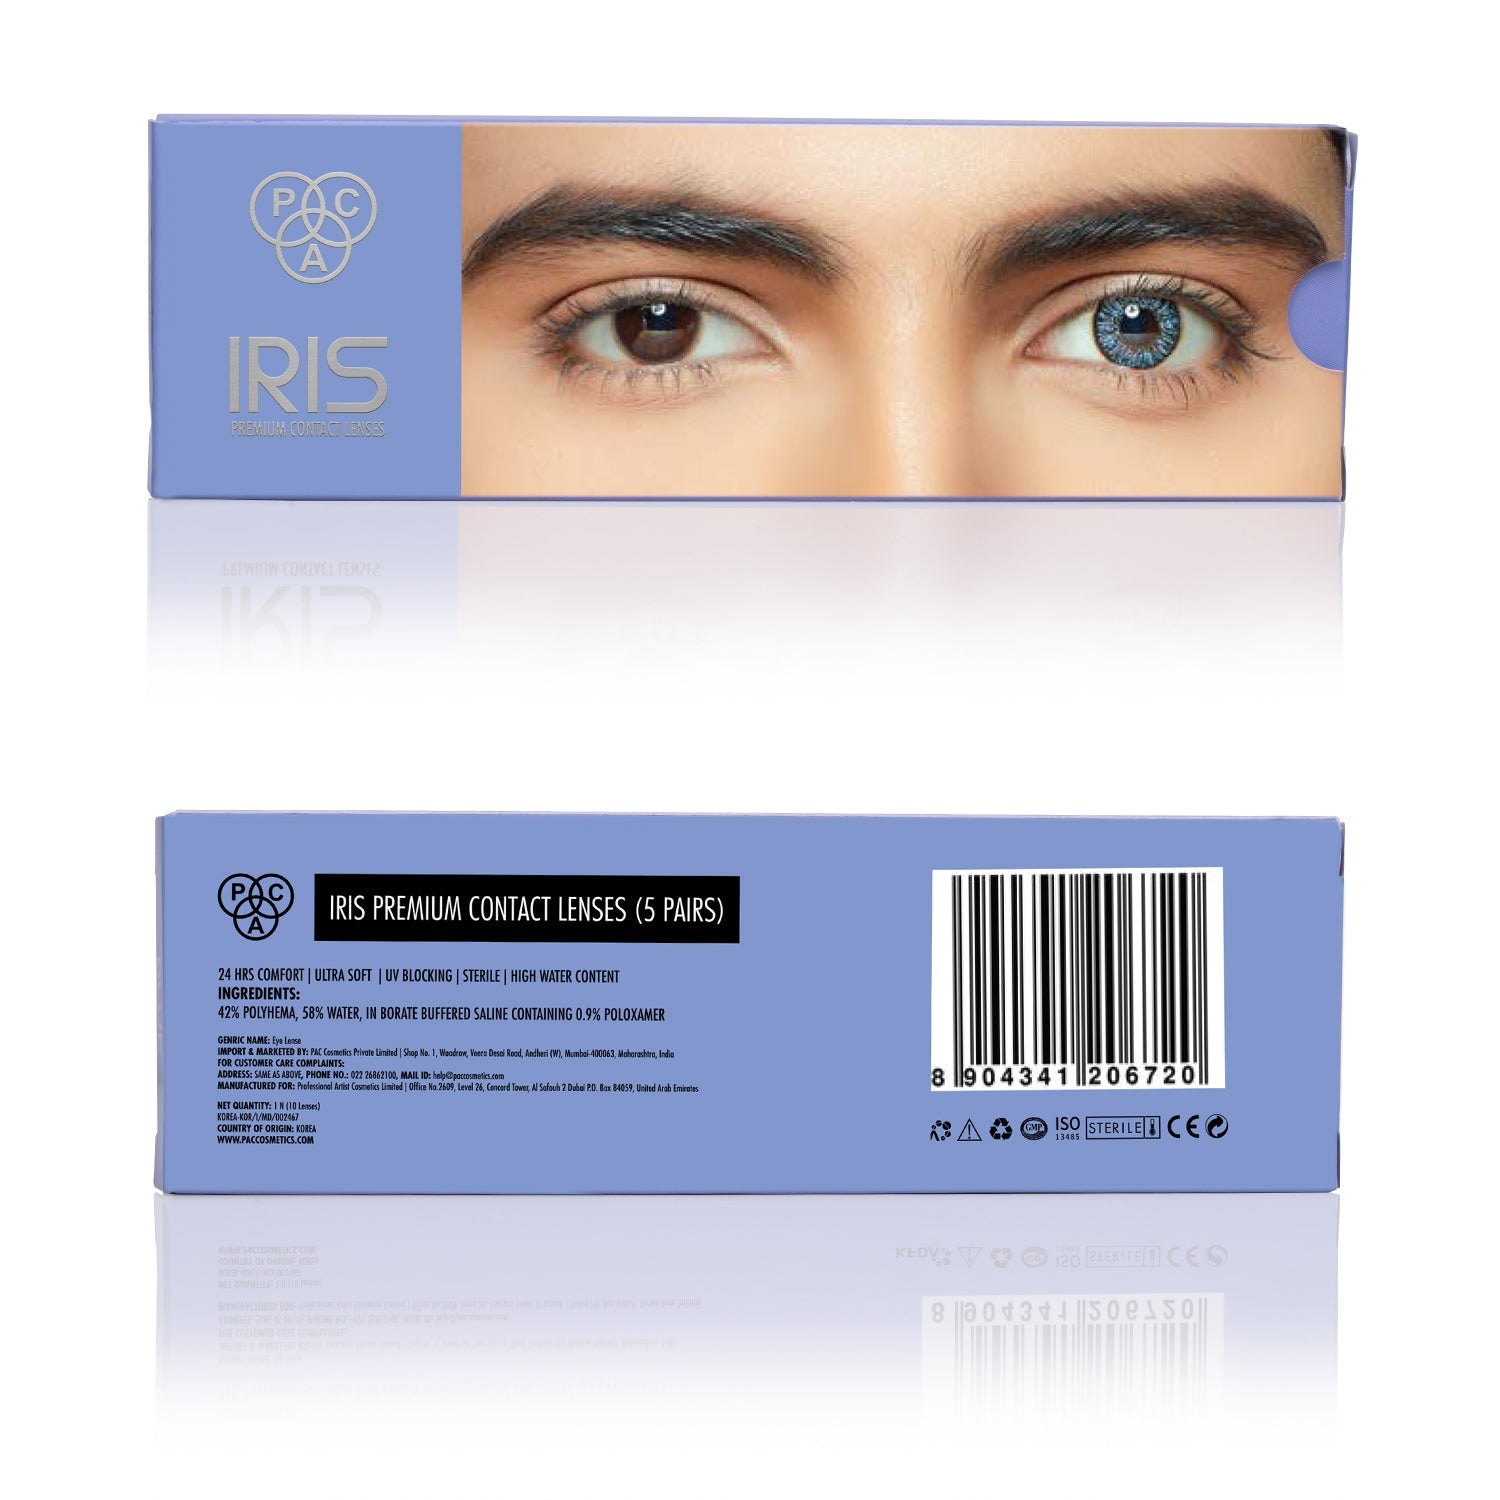 PAC Cosmetics IRIS Premium Contact Lenses (5 Pairs) #Color_Blue